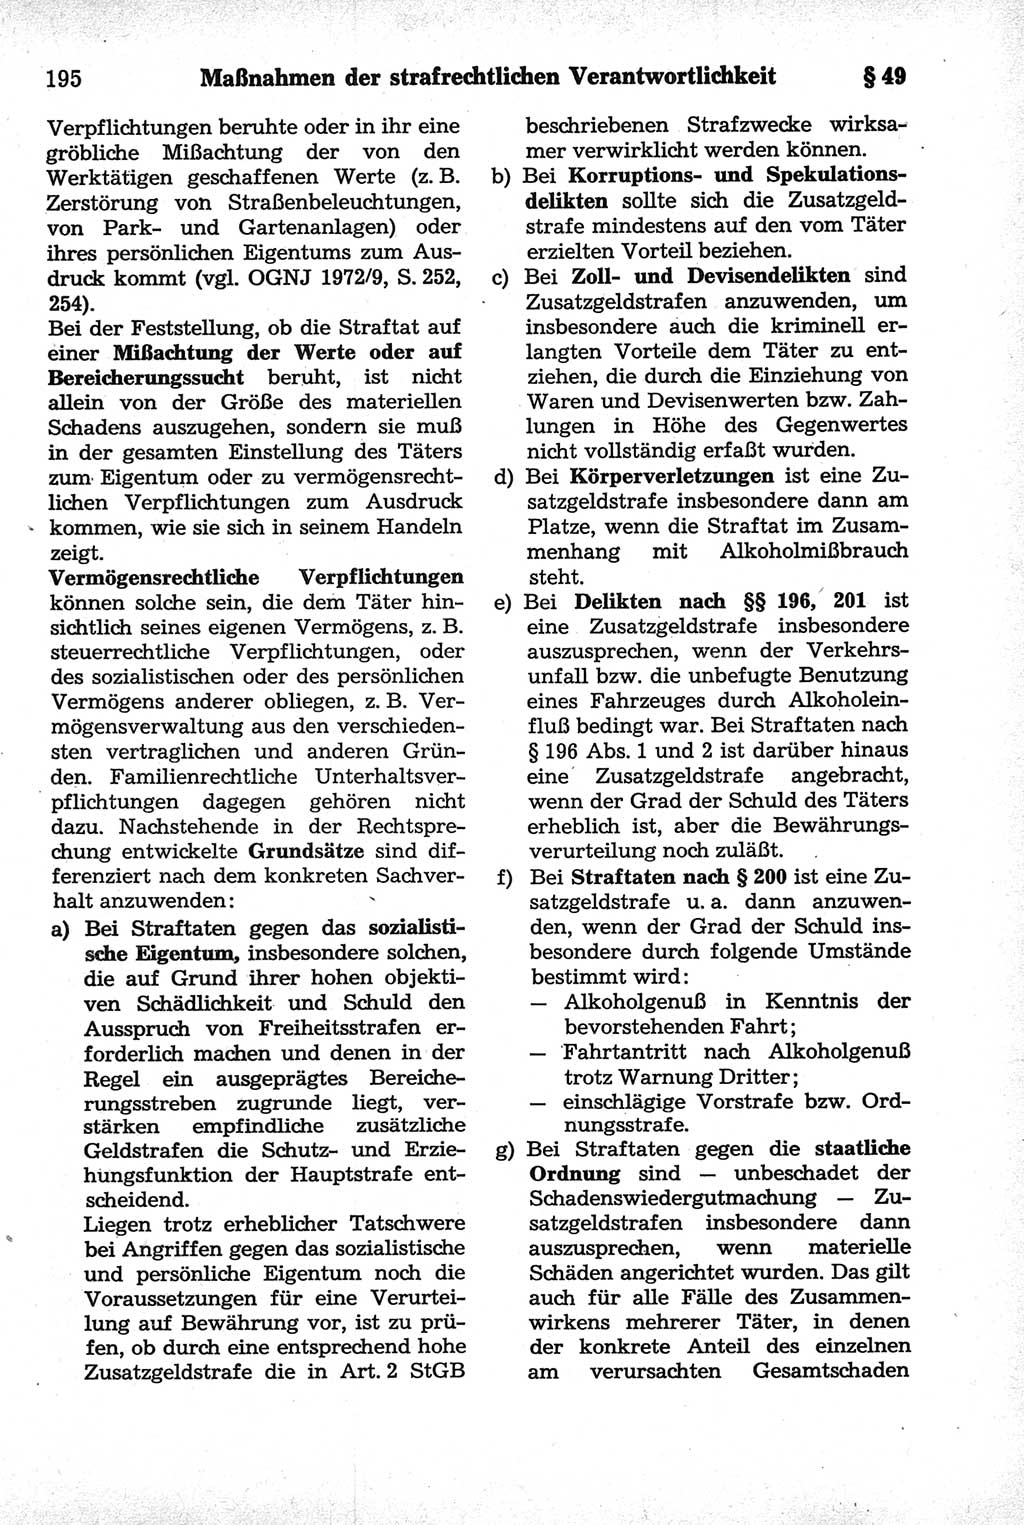 Strafrecht der Deutschen Demokratischen Republik (DDR), Kommentar zum Strafgesetzbuch (StGB) 1981, Seite 195 (Strafr. DDR Komm. StGB 1981, S. 195)